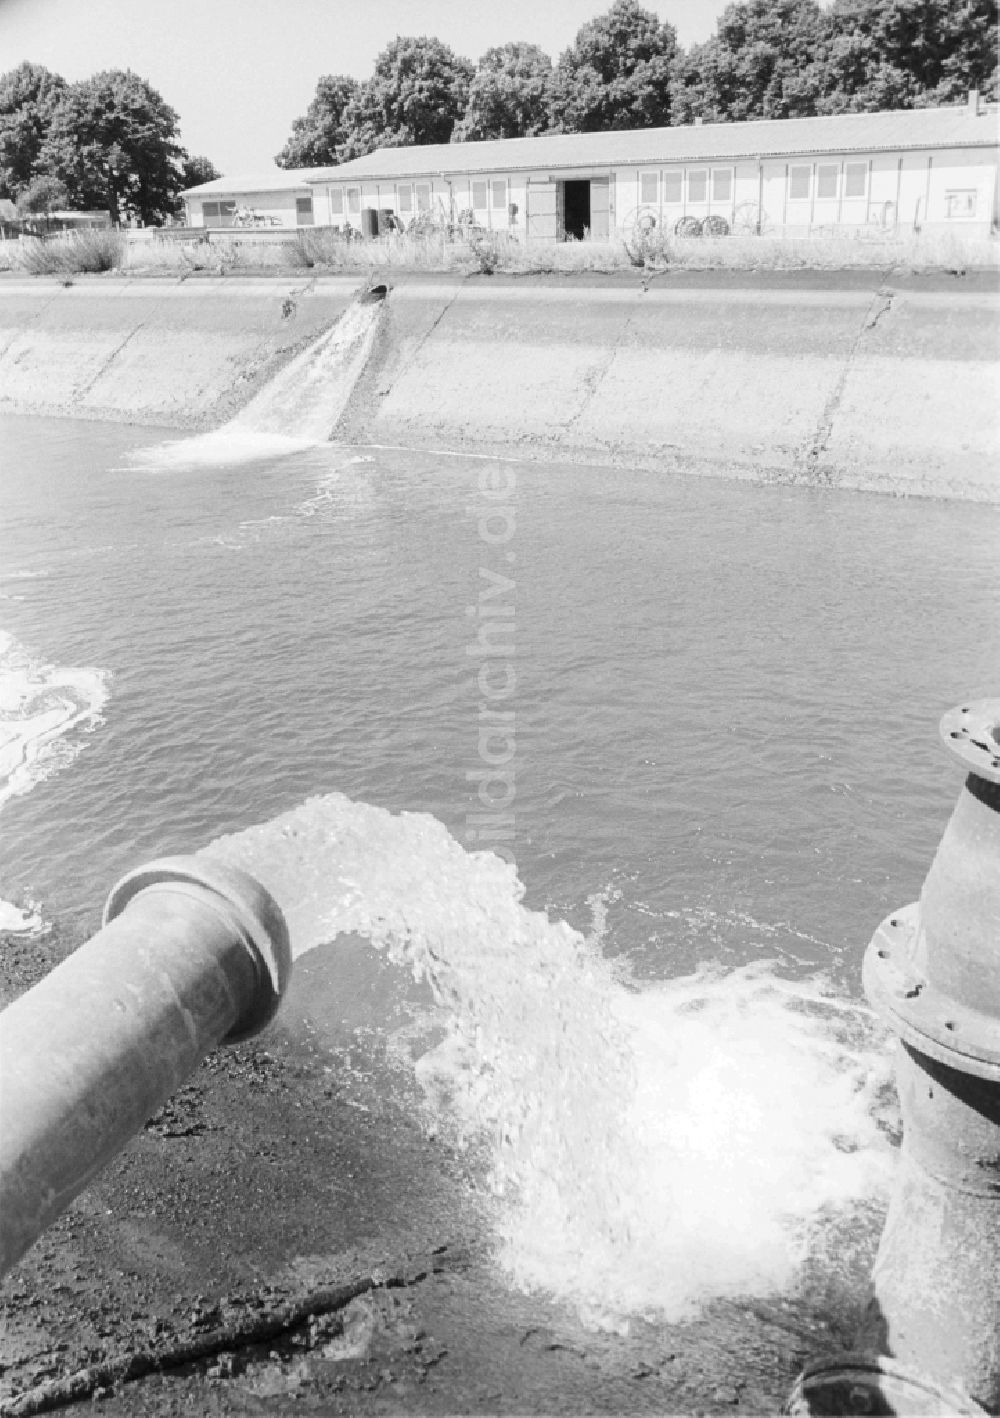 DDR-Bildarchiv: Niederer Fläming - Wassersammelbecken der LPG Hohenseefeld im Kreis Jüterbog in Niederer Fläming in Brandenburg in der DDR